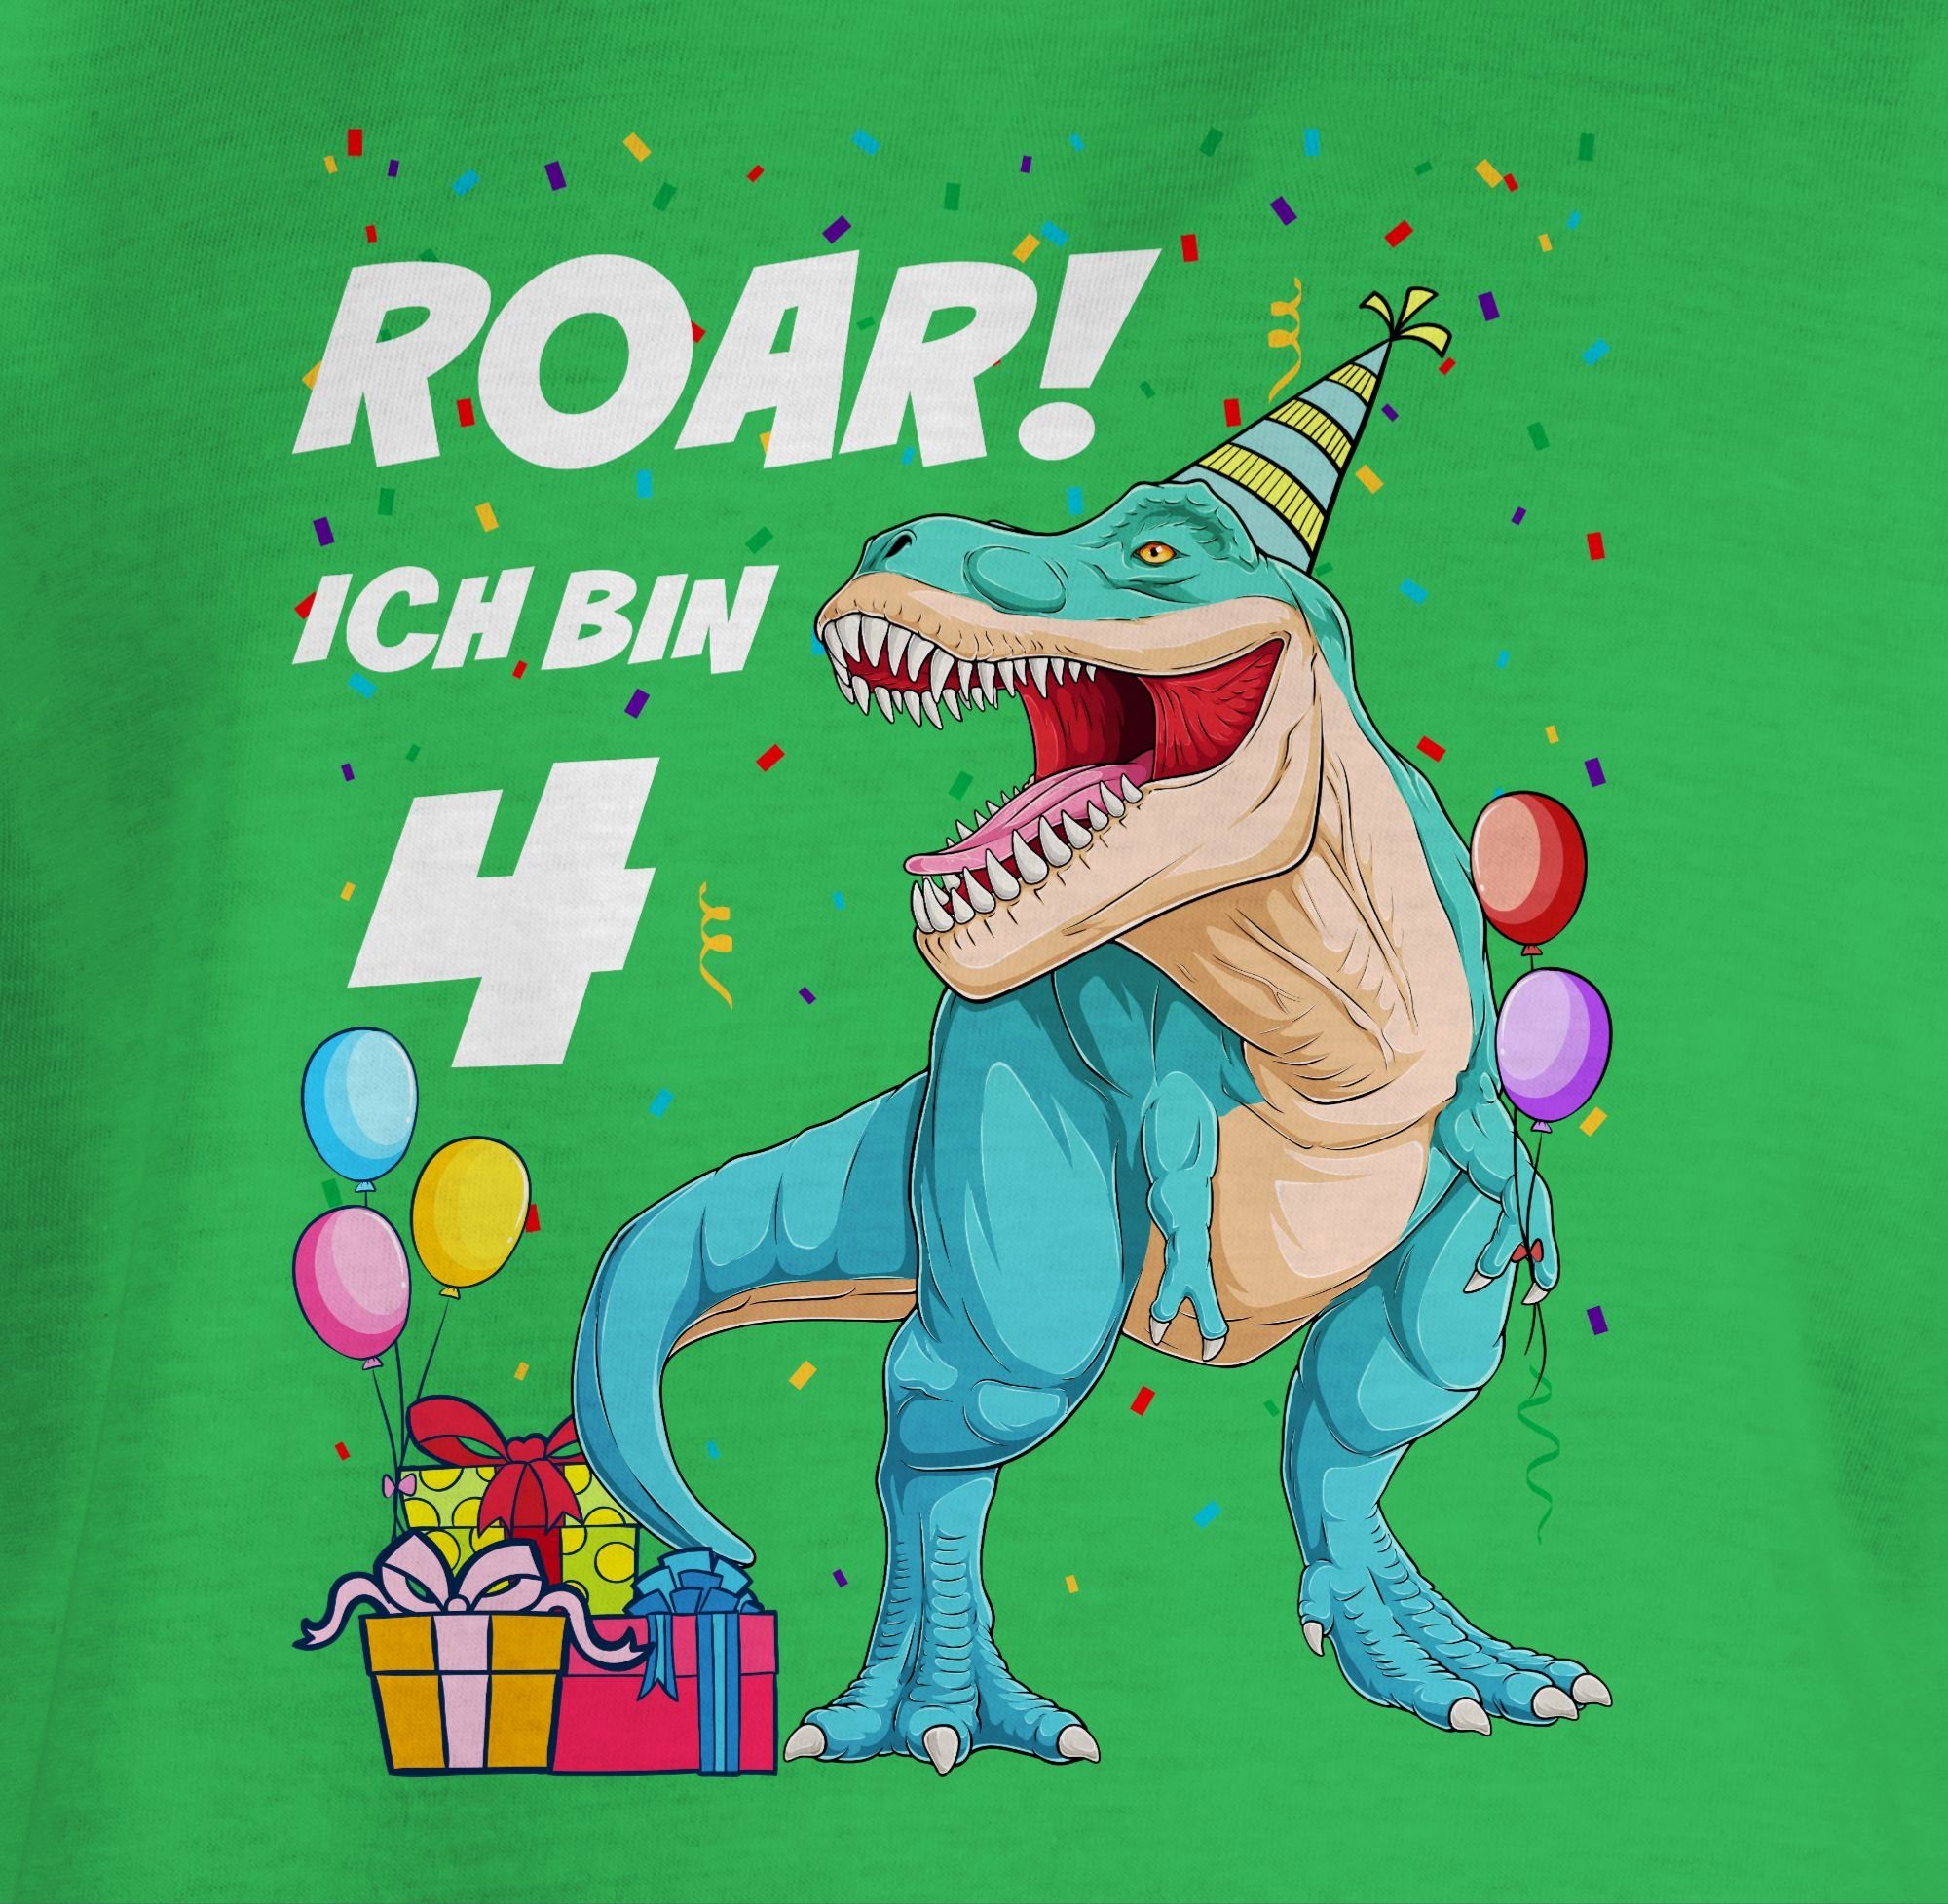 Shirtracer T-Shirt Ich Jahre Dino 4 T-Rex 4. Grün Geburtstag bin Dinosaurier 3 